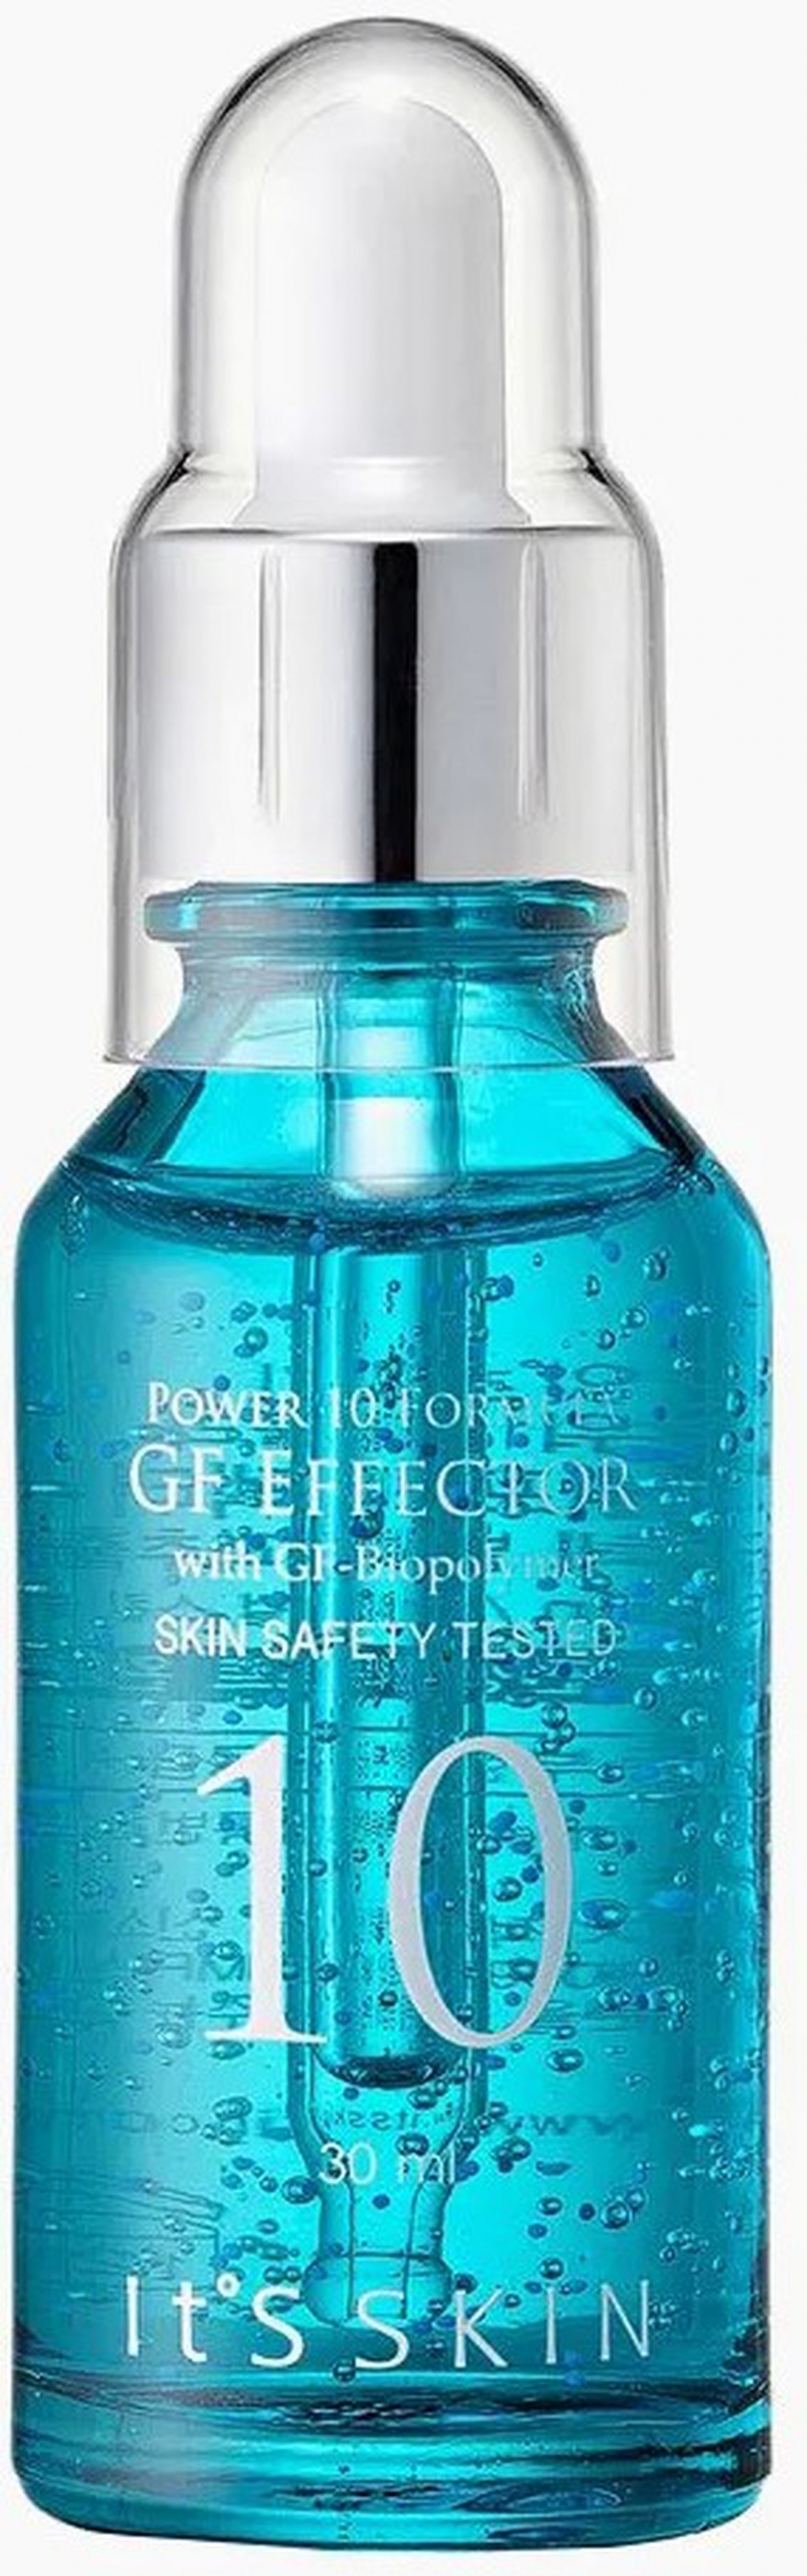 Увлажняющая сыворотка для лица It's Skin Power 10 Formula GF Effector